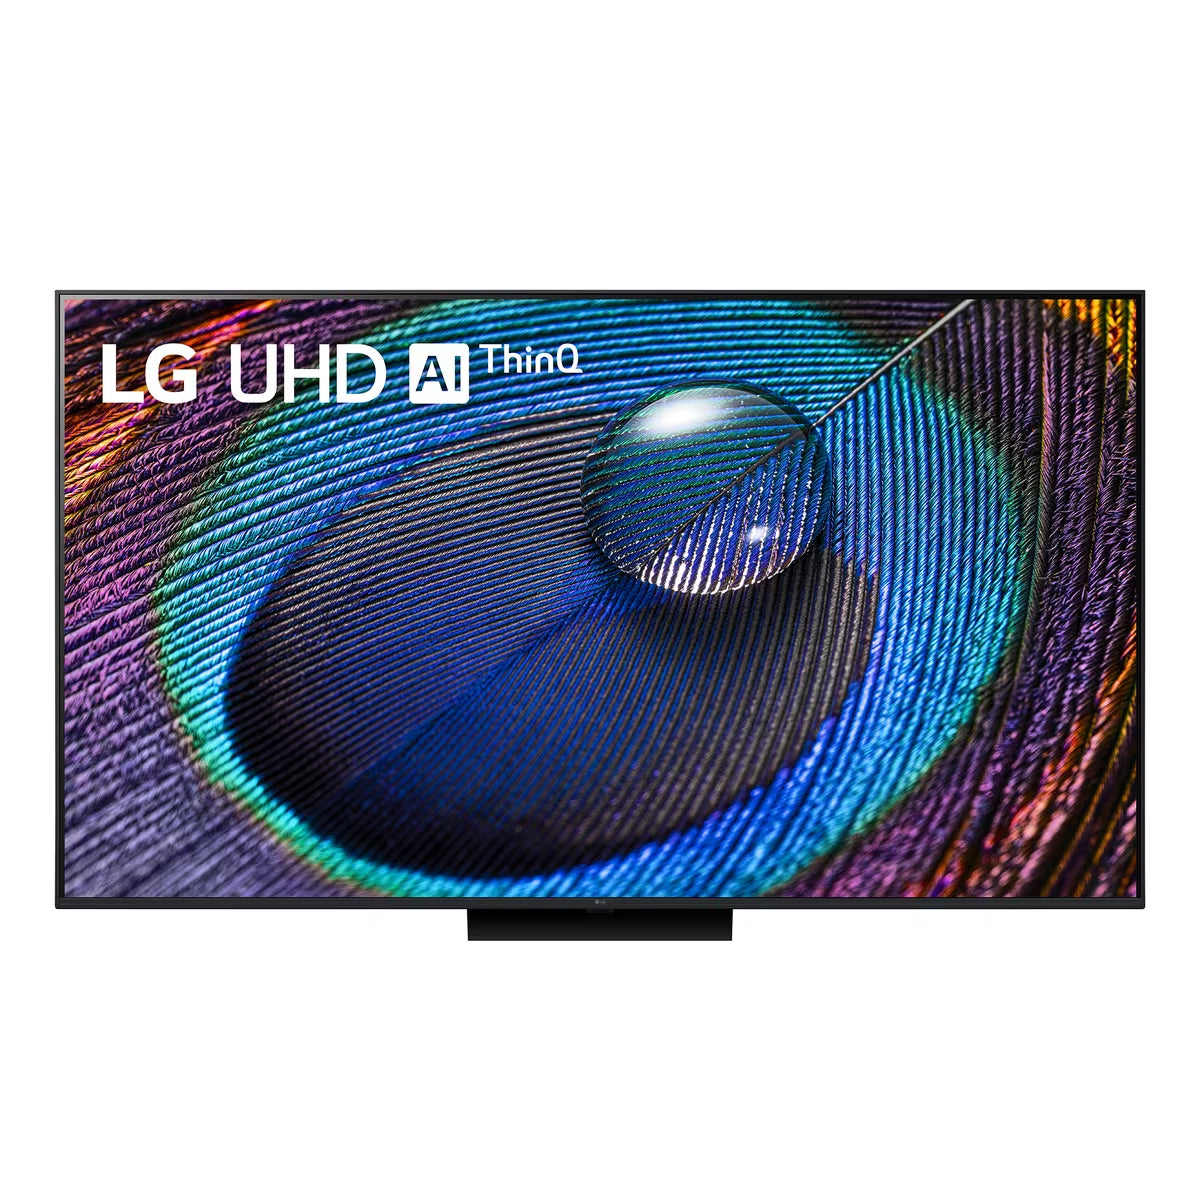 LG 樂金 UR91/UR9150 系列 4K 智能電視